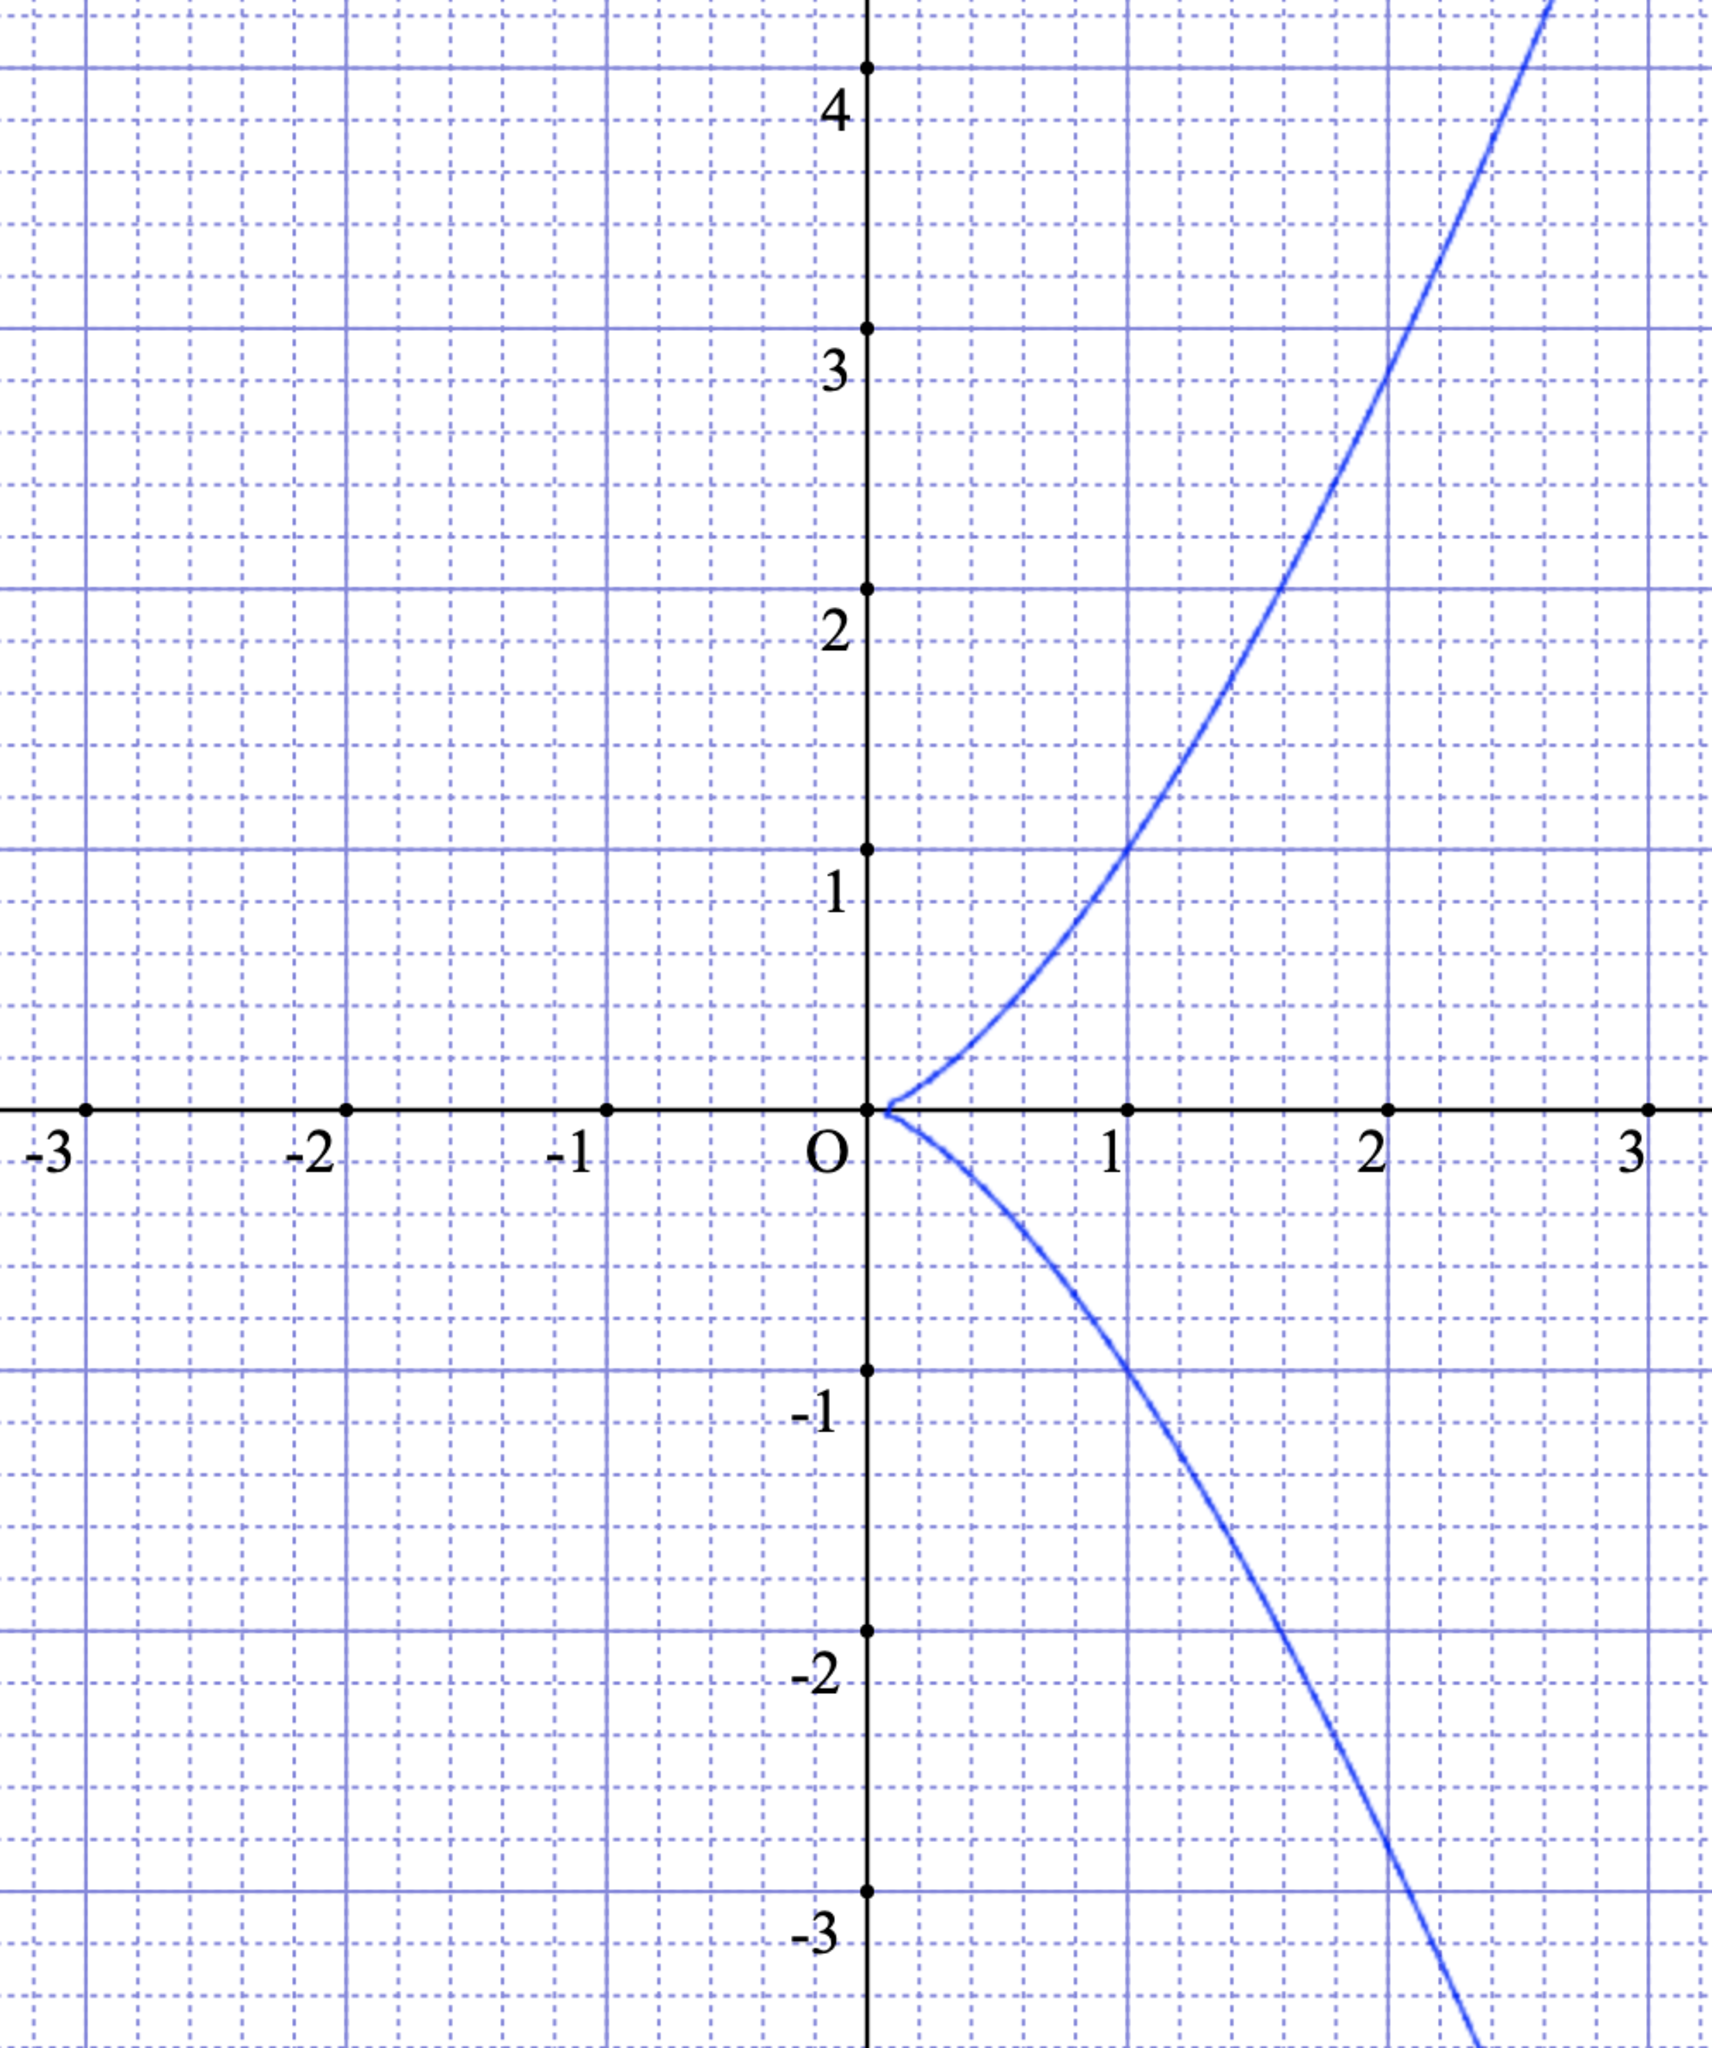 cuspidal curve